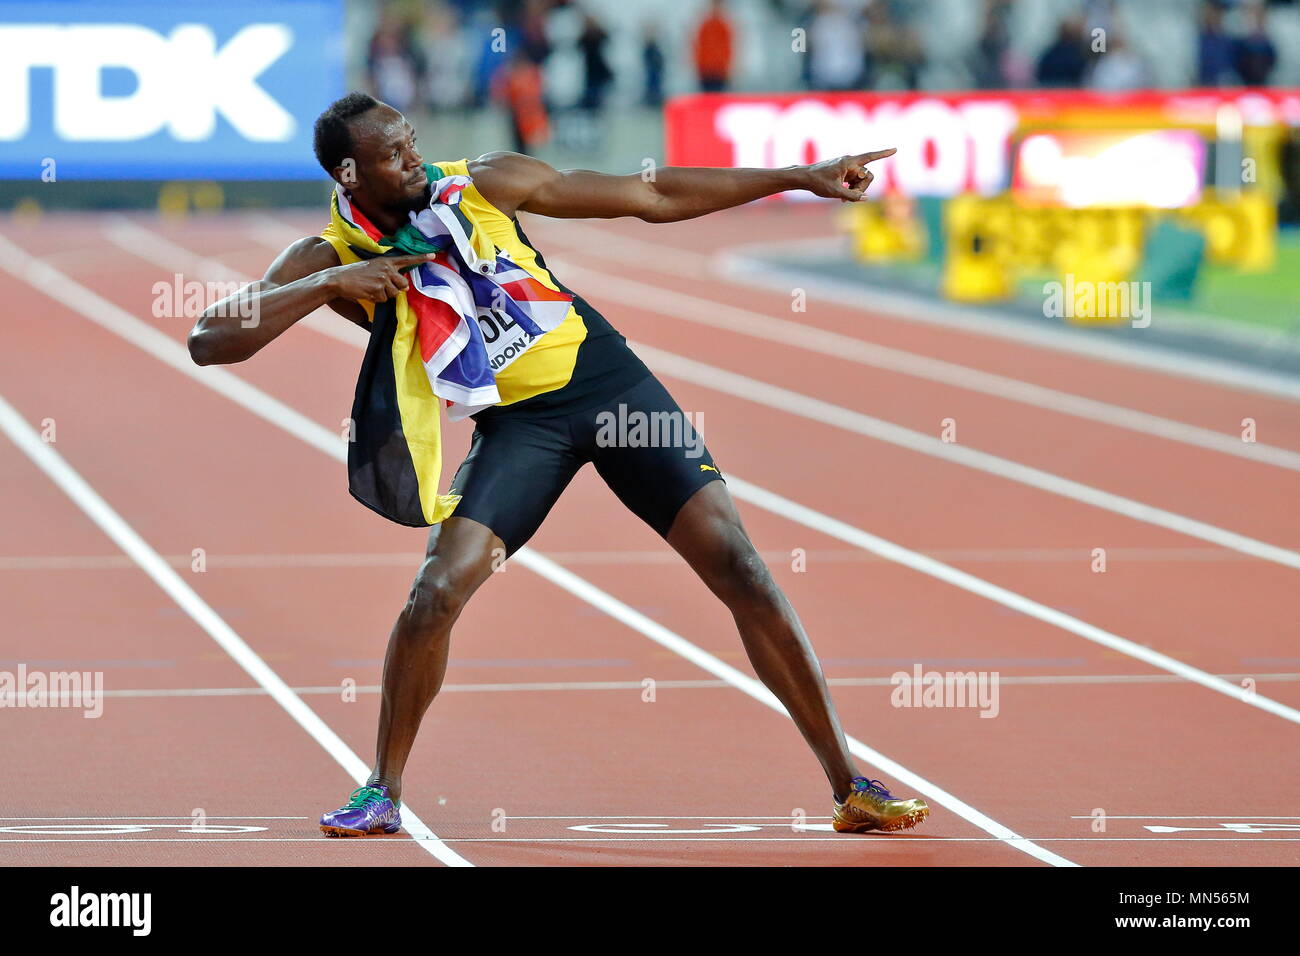 Londres, Inglaterra - 05 de agosto: Usain Bolt de Jamaica tras correr su  última carrera de 100m, se encuentra con la bandera Union Jack y Jamaica  alrededor de su cuello y tira